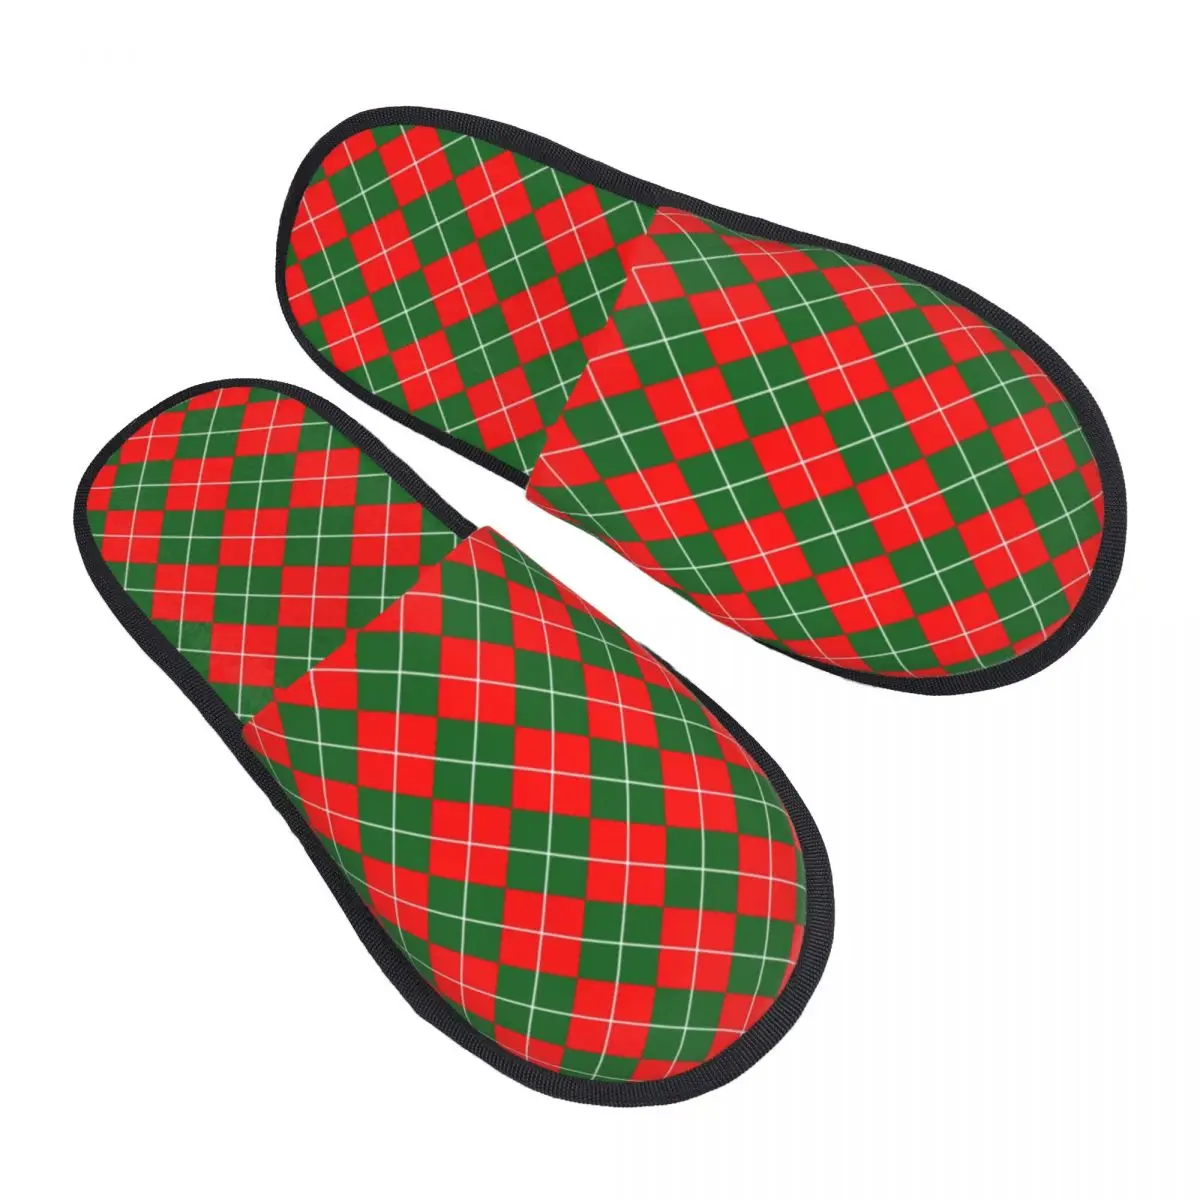 

Тапки женские домашние в ретро стиле, уютные туфли из пены с эффектом памяти, с узором ромбиками, красные, белые, зеленые, без застежки, тапочки для отеля